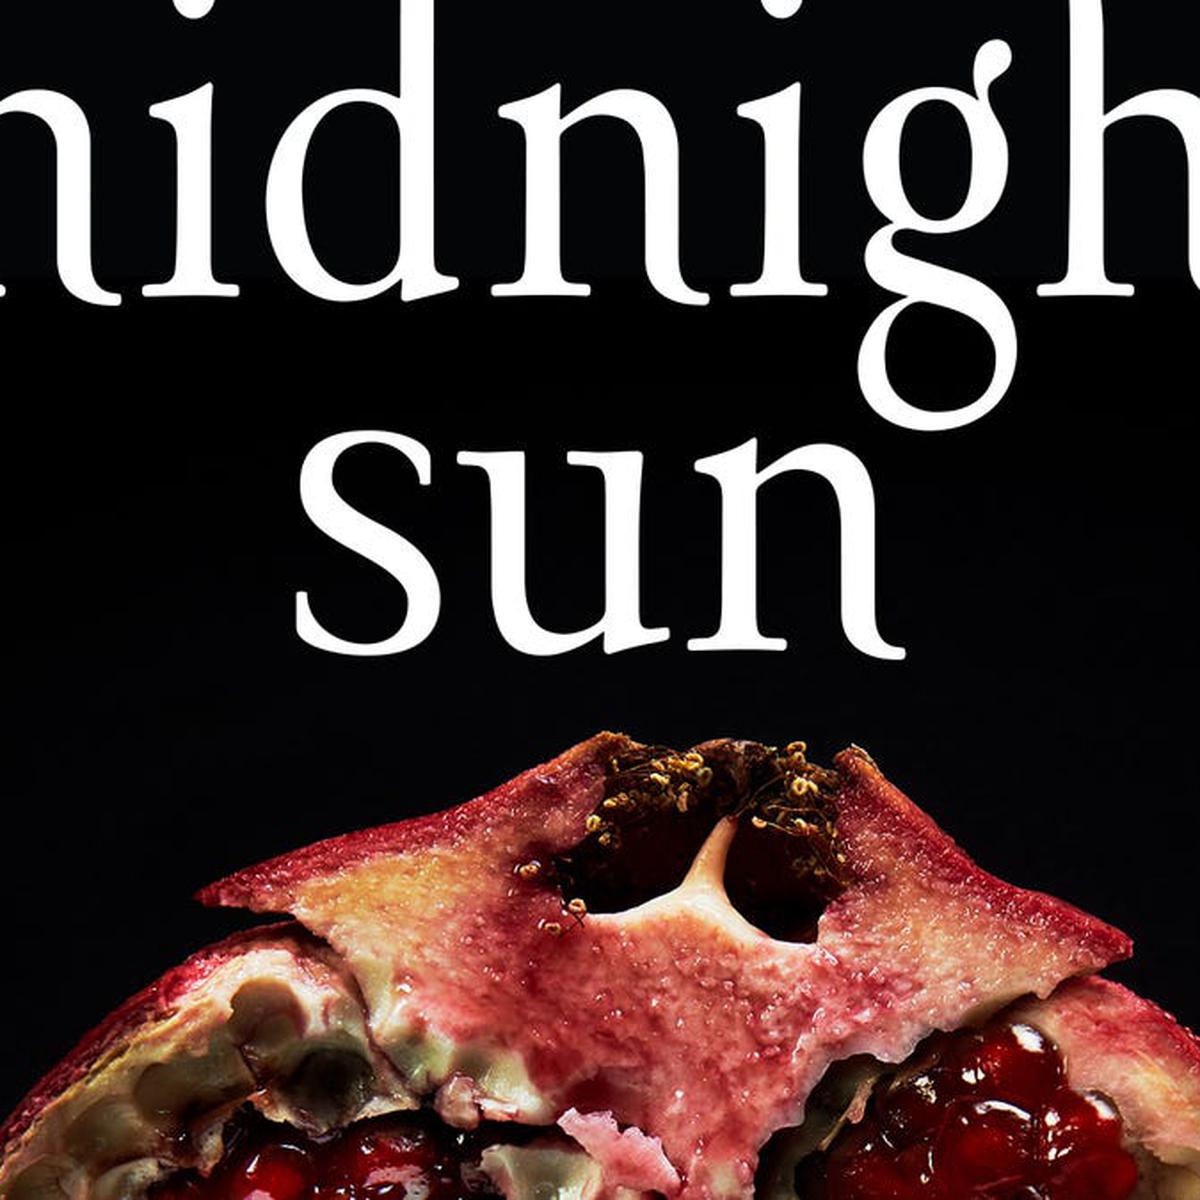 Saga de Crepúsculo tendrá un nuevo libro: Midnight Sun - Música y